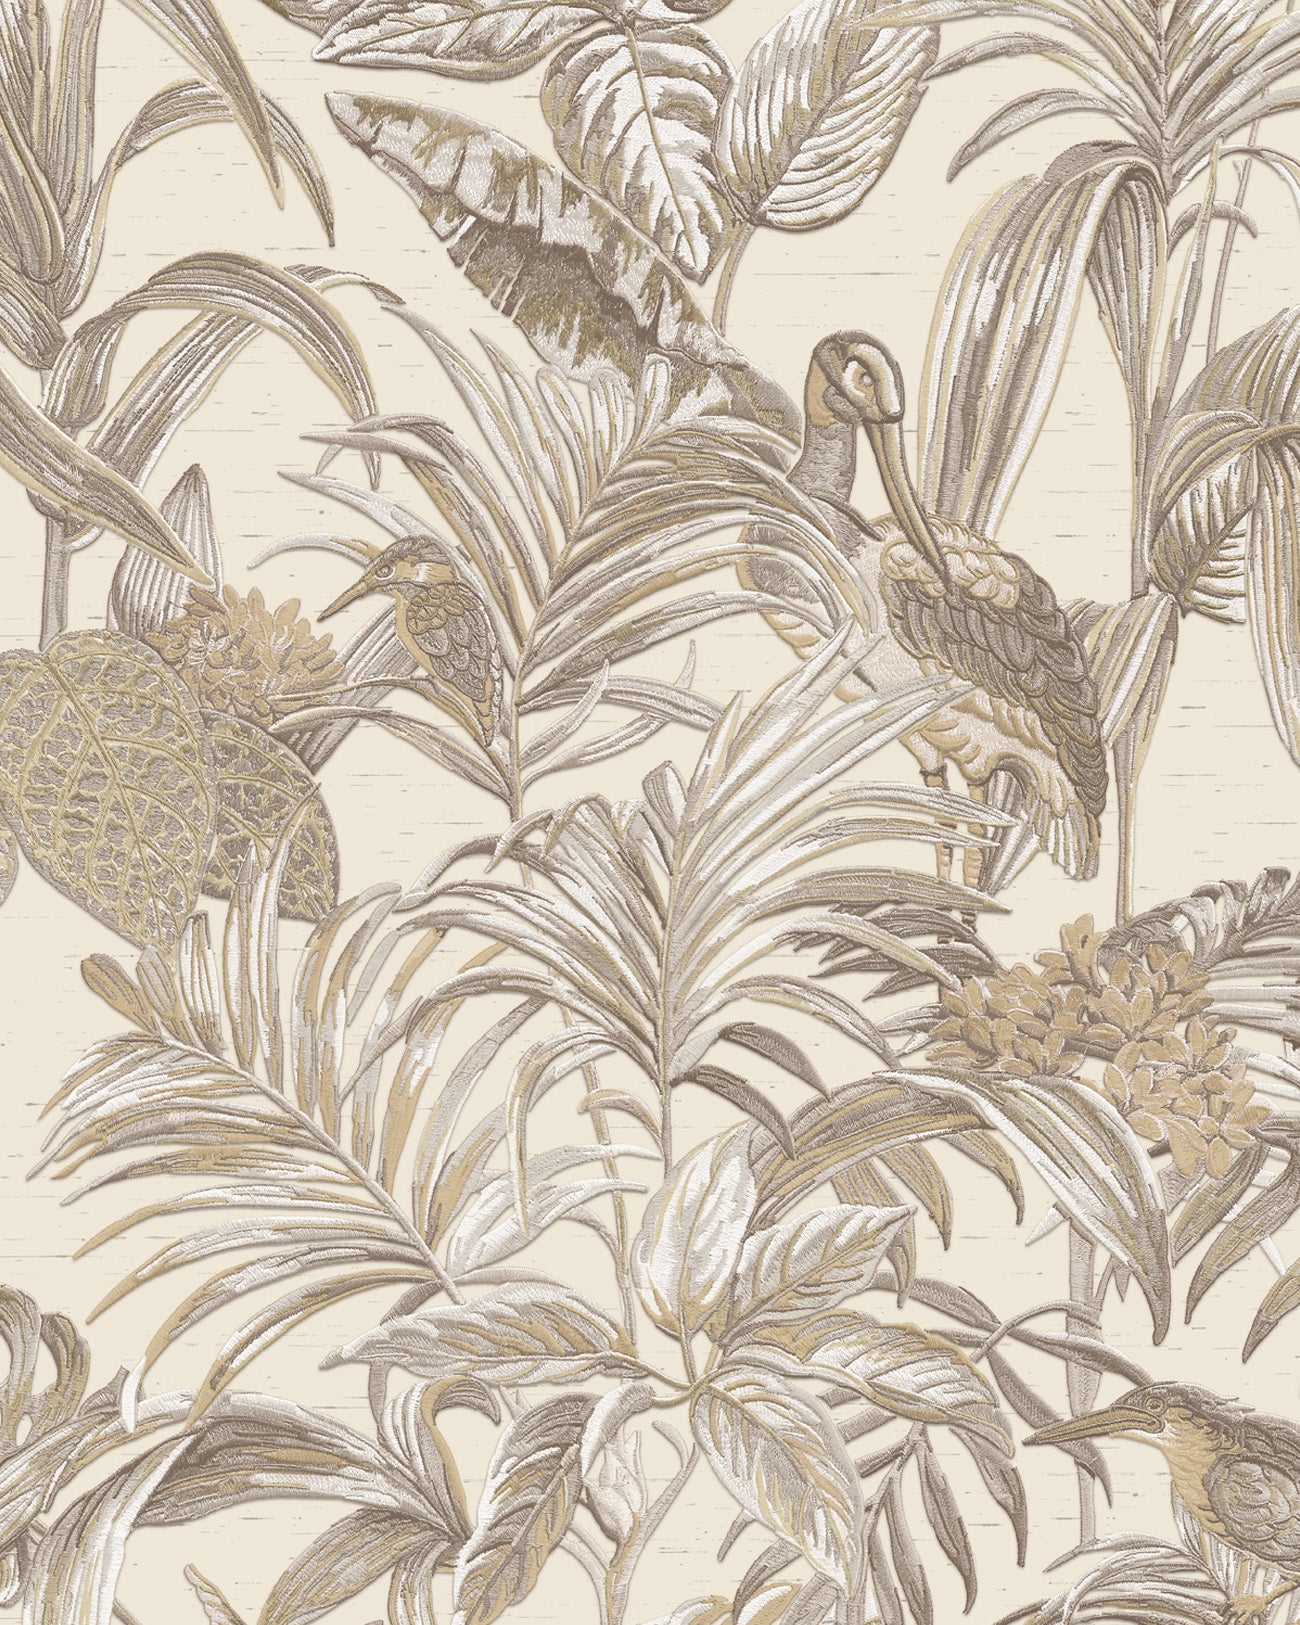 Papier peint moitf d'oiseaux Profhome DE120012-DI papier peint intissé gaufré à chaud gaufré avec un dessin exotique brillant ivoire blanc-crème bronze 5,33 m2-1